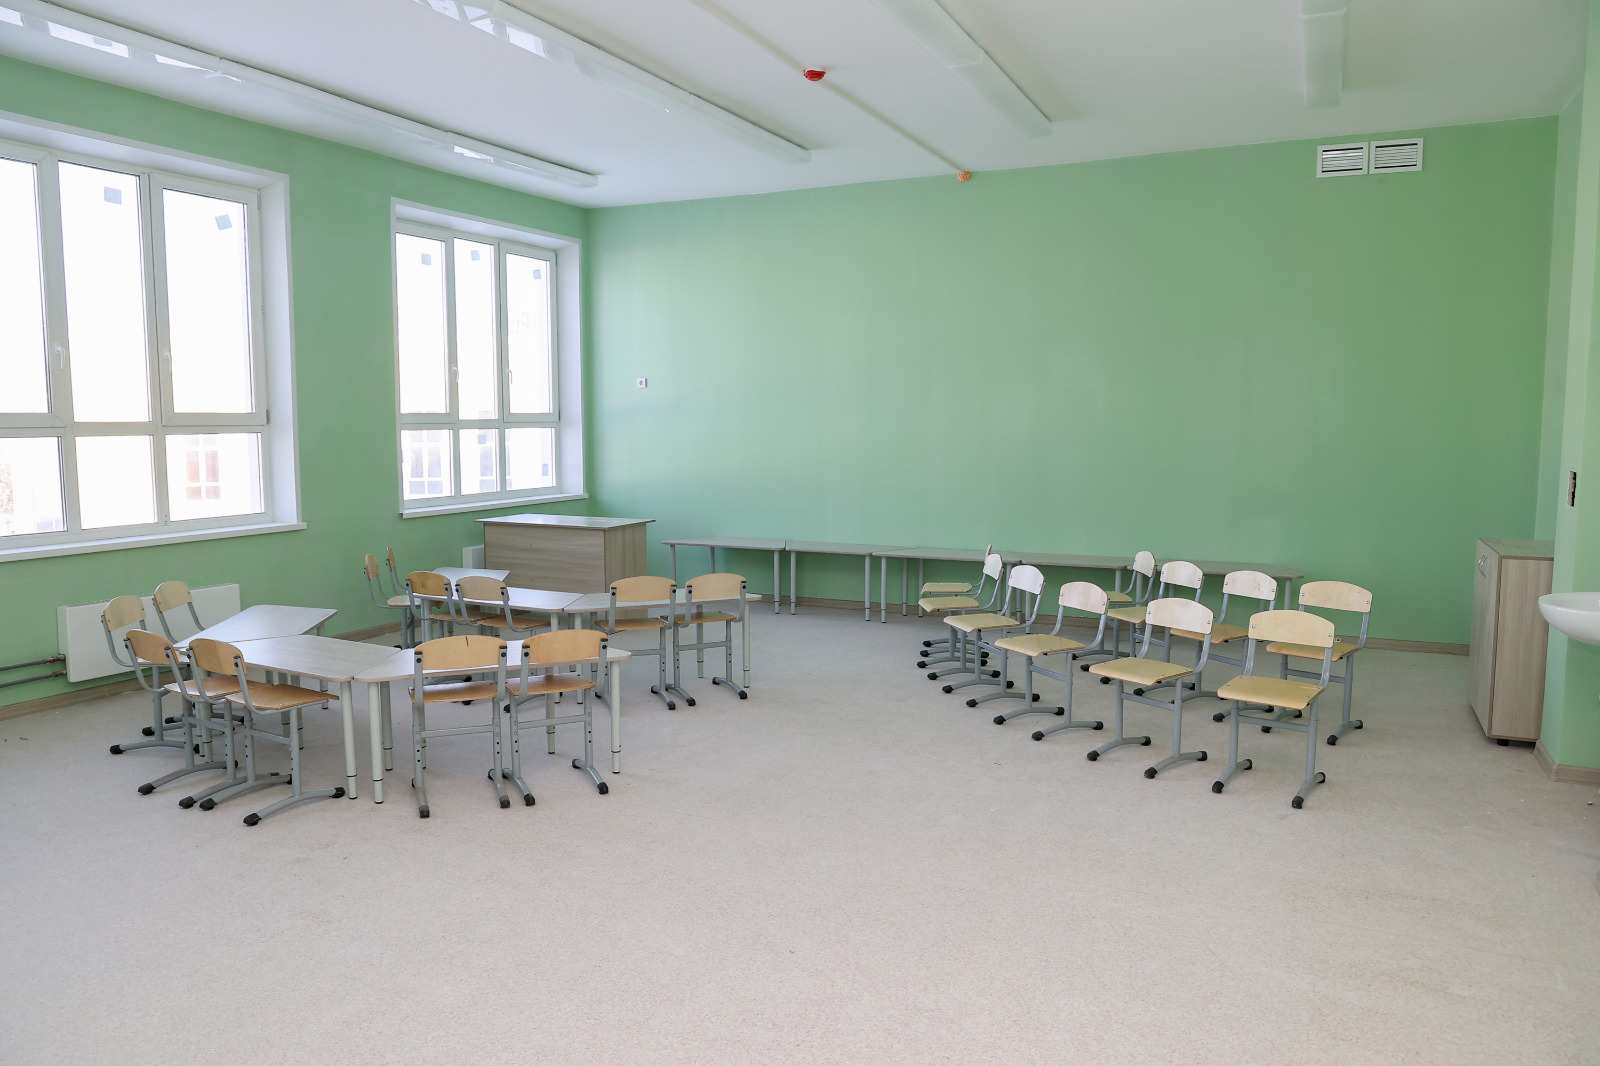 Территорию у школы в Кузнечихе Нижнего Новгорода благоустроят за 99 млн рублей